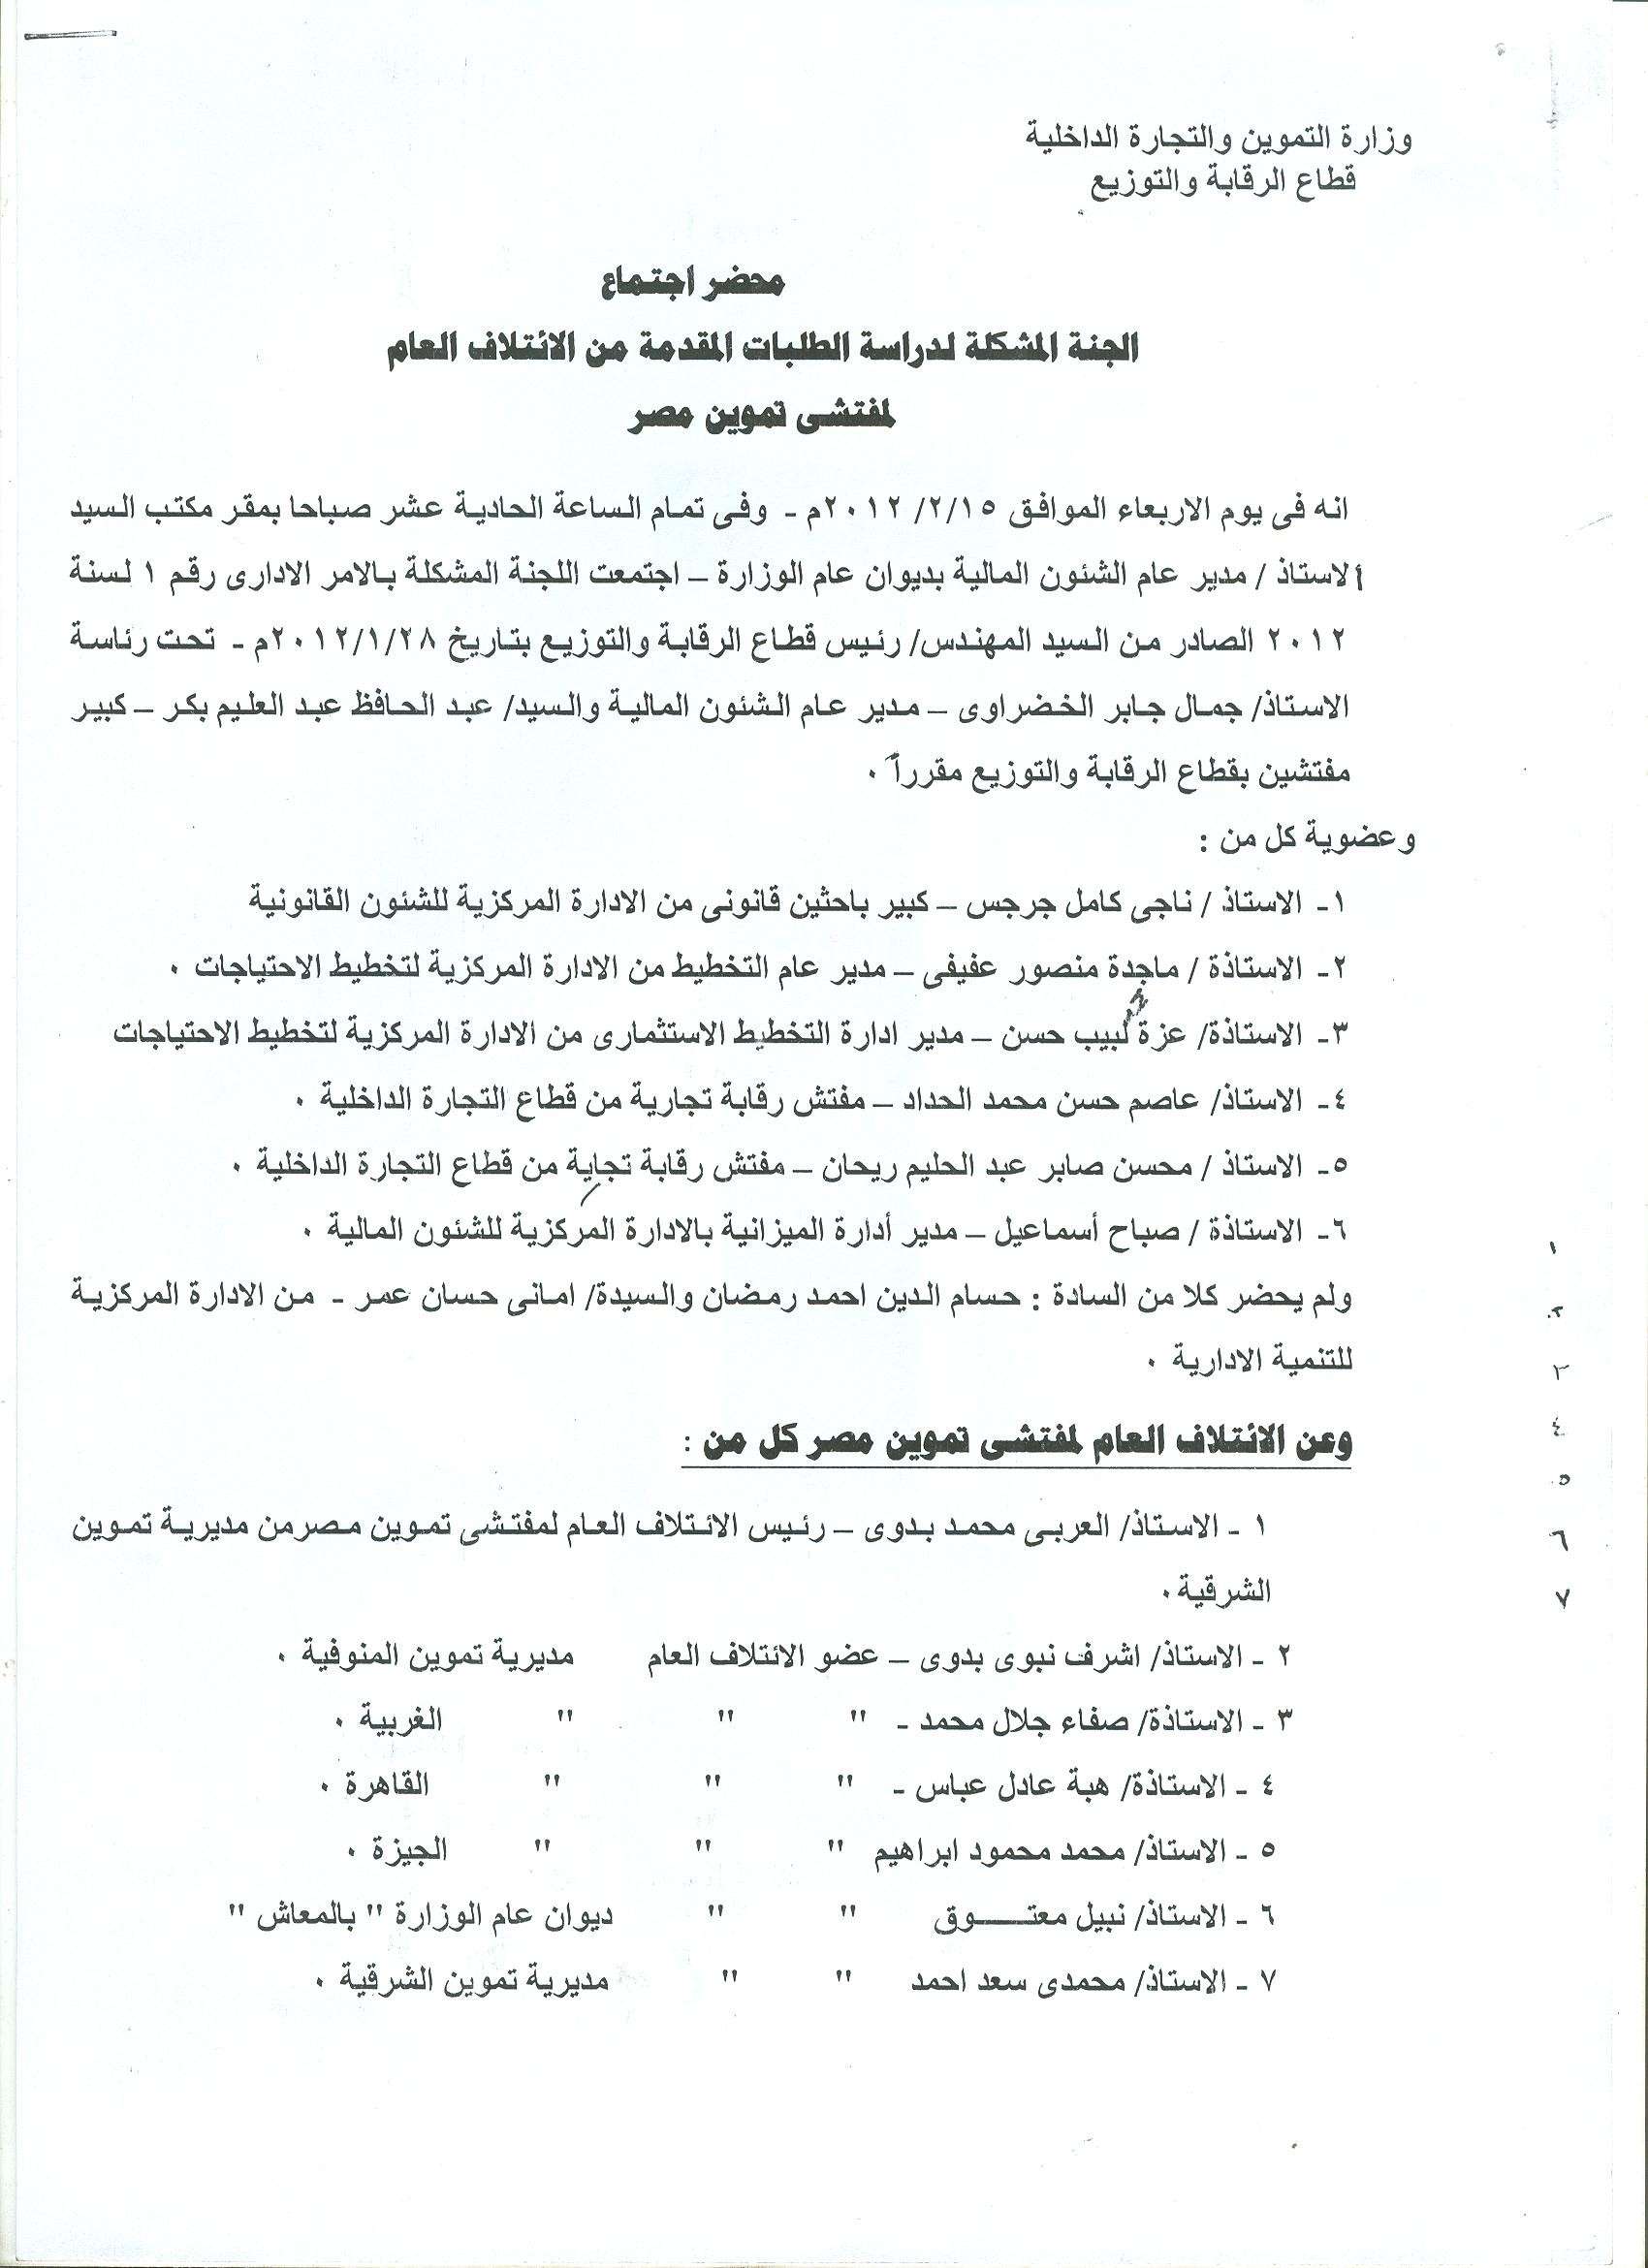 أعمال لجنة الإئتلاف العام للعاملين بتموين مصر بالوزاره خلال شهر فبراير 2012 - صفحة 2 1210